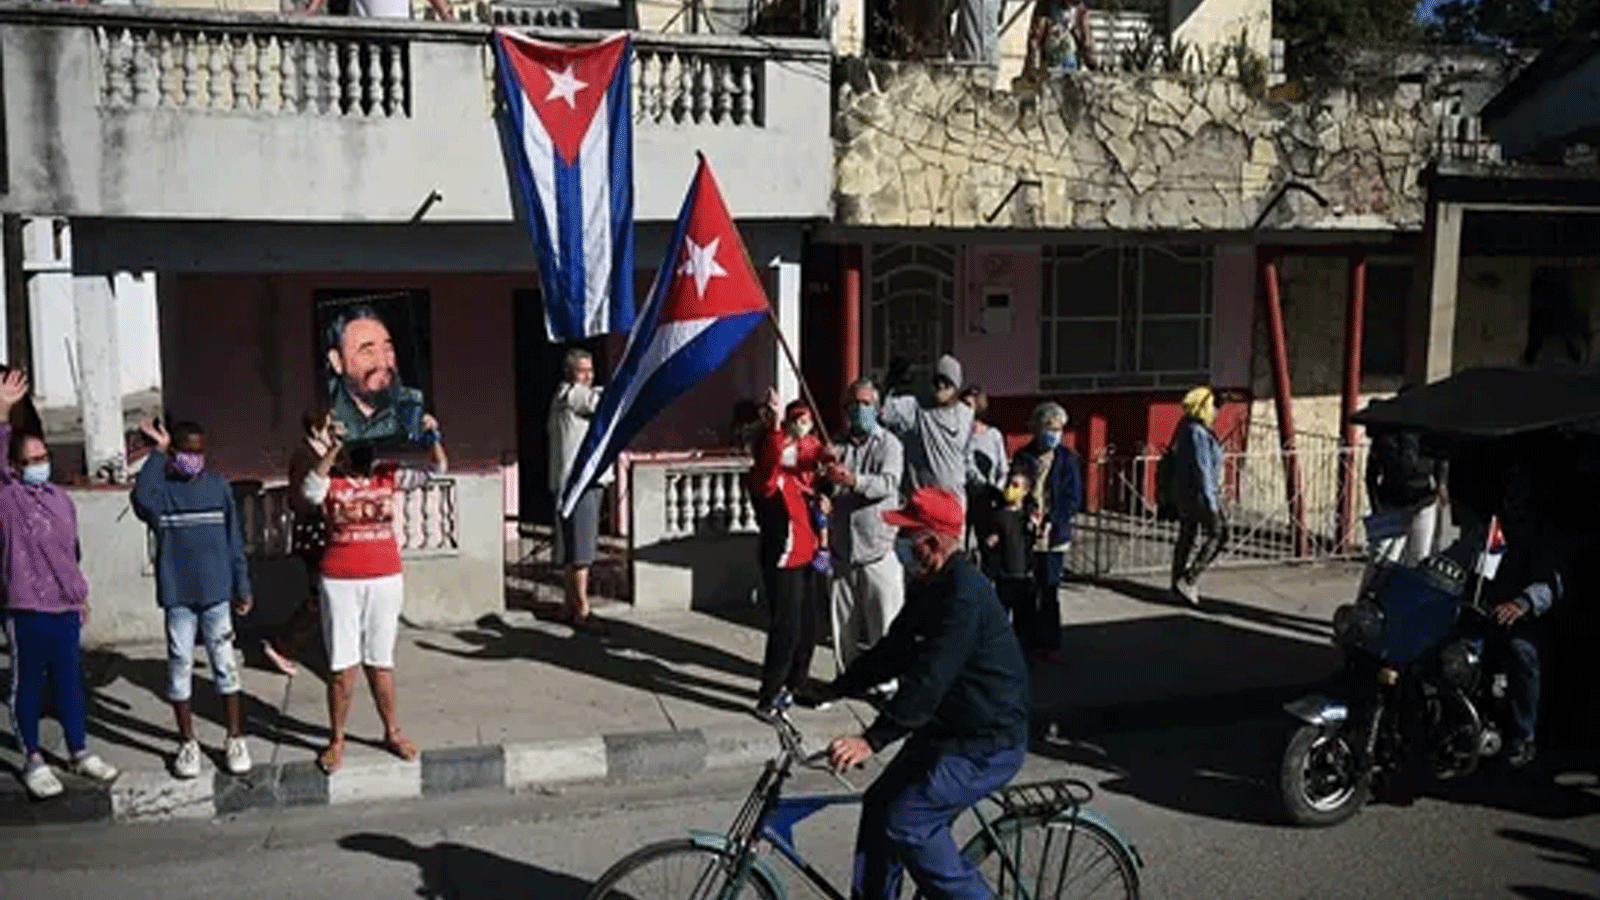  امرأة تحمل صورة الزعيم الكوبي فيدل كاسترو، خلال احتجاج على الحظر الأميريكي المفروض على كوبا، في سانتا كلارا، كوبا.